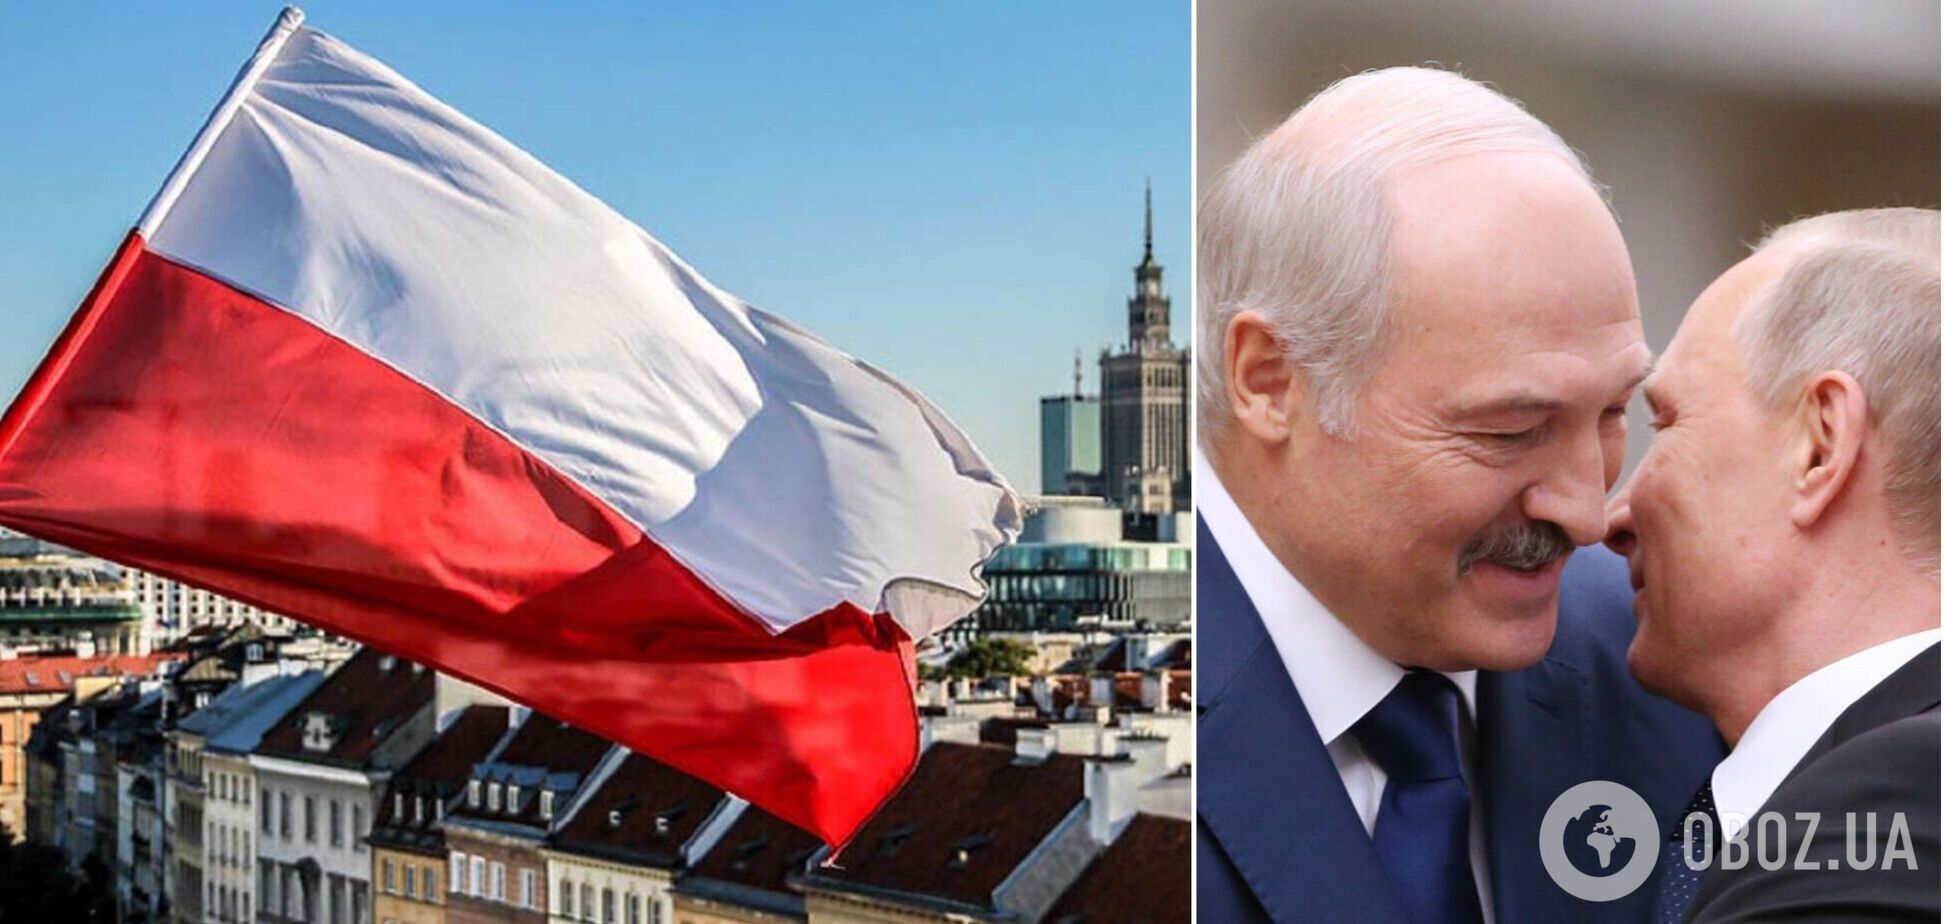 Беларусь пытается отбелить свой имидж, проявляя 'открытость' к диалогу, – спецслужбы Польши